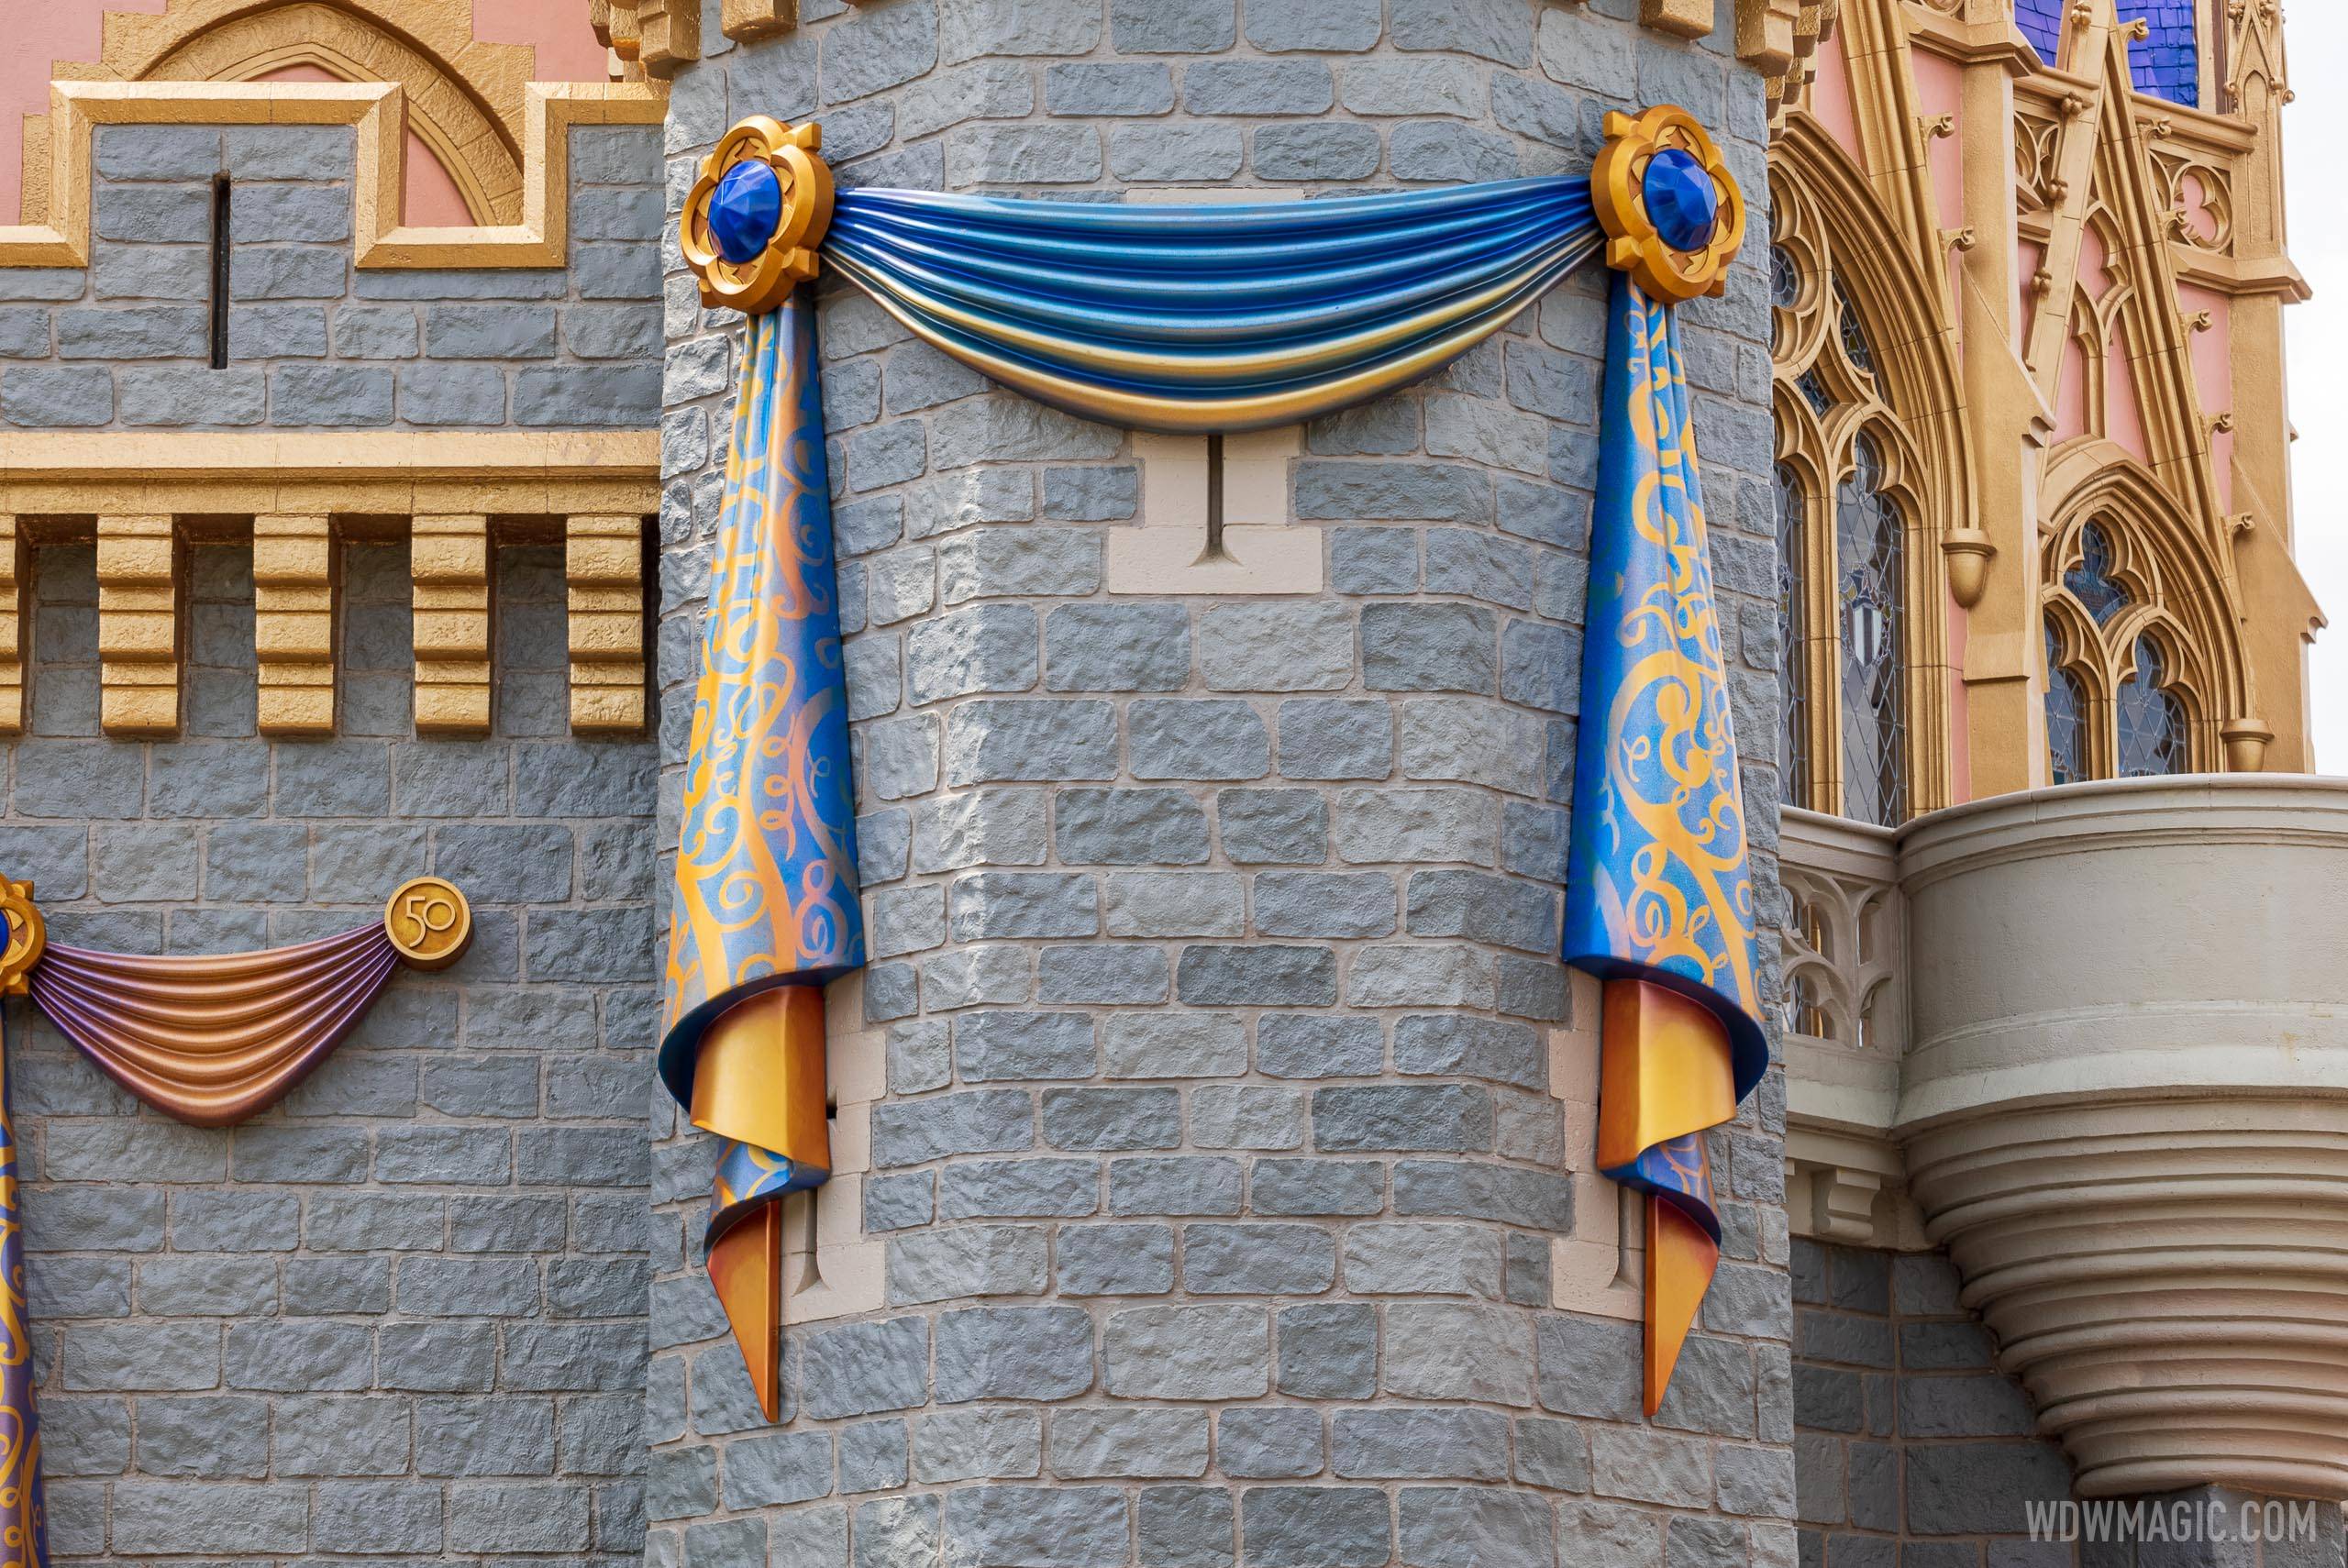 50th anniversary Cinderella Castle additions - March 15 2021